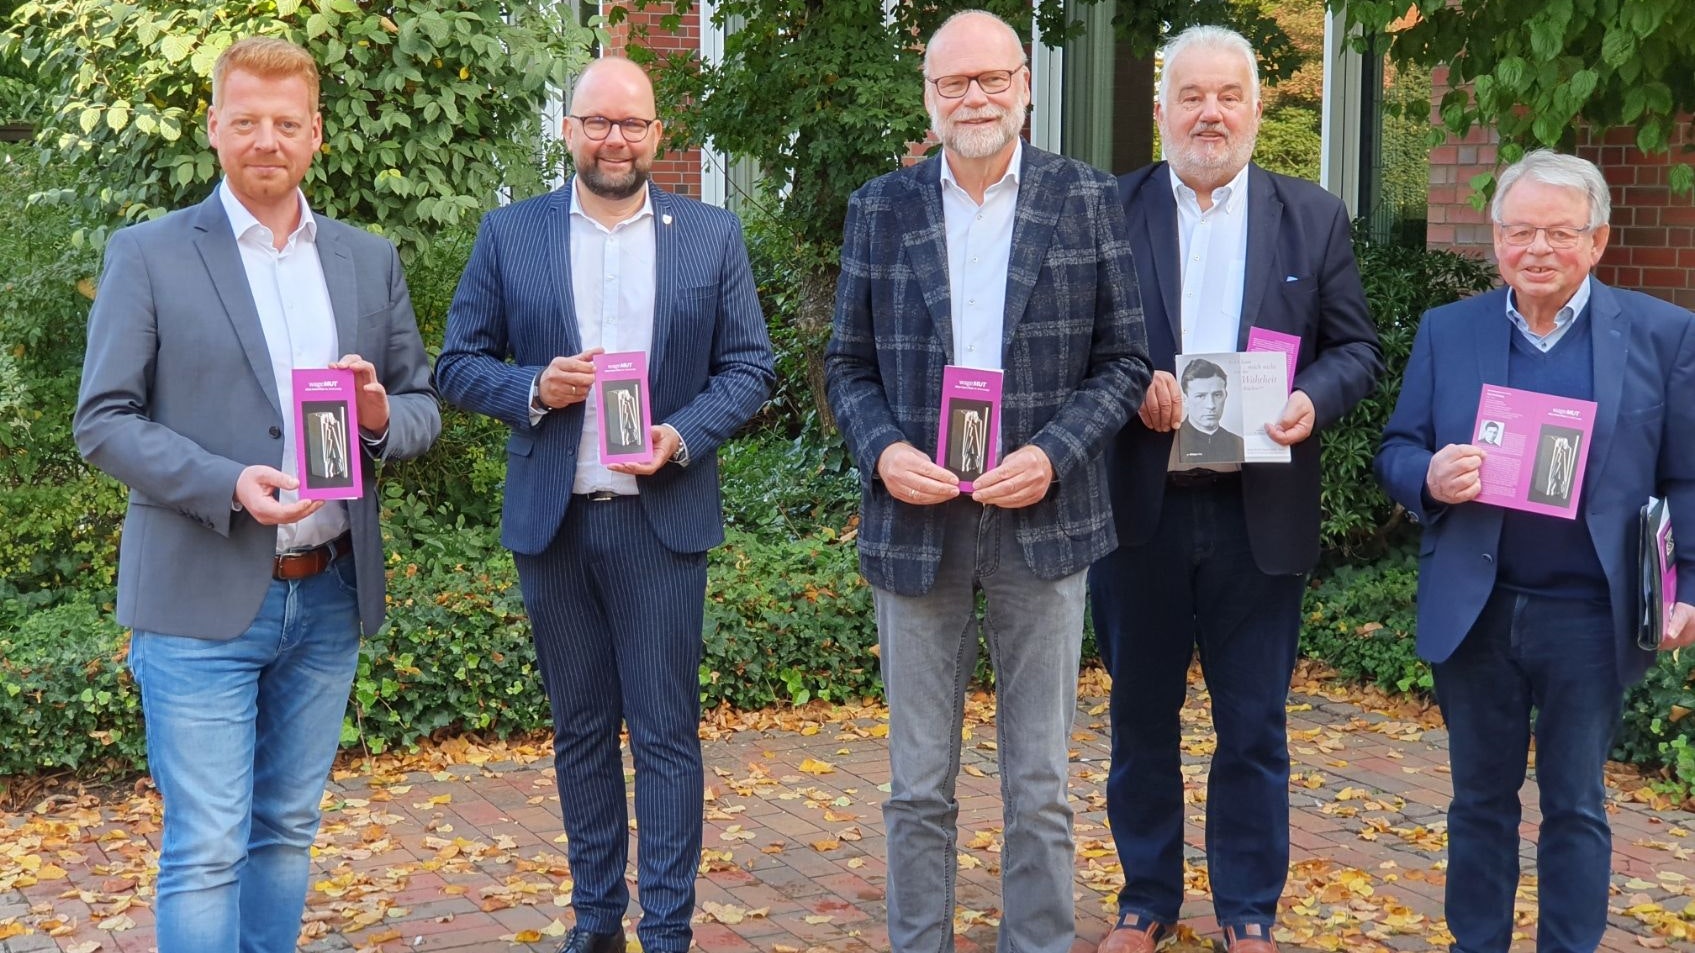 Werben für den Vikar-Ernst-Henn-Preis: (von links) Alexander Rolfes, Johan Wimberg, Professor Dr. Uwe Meiners, Hubert Breuer und Werner Nilles. Foto: M. Kessens